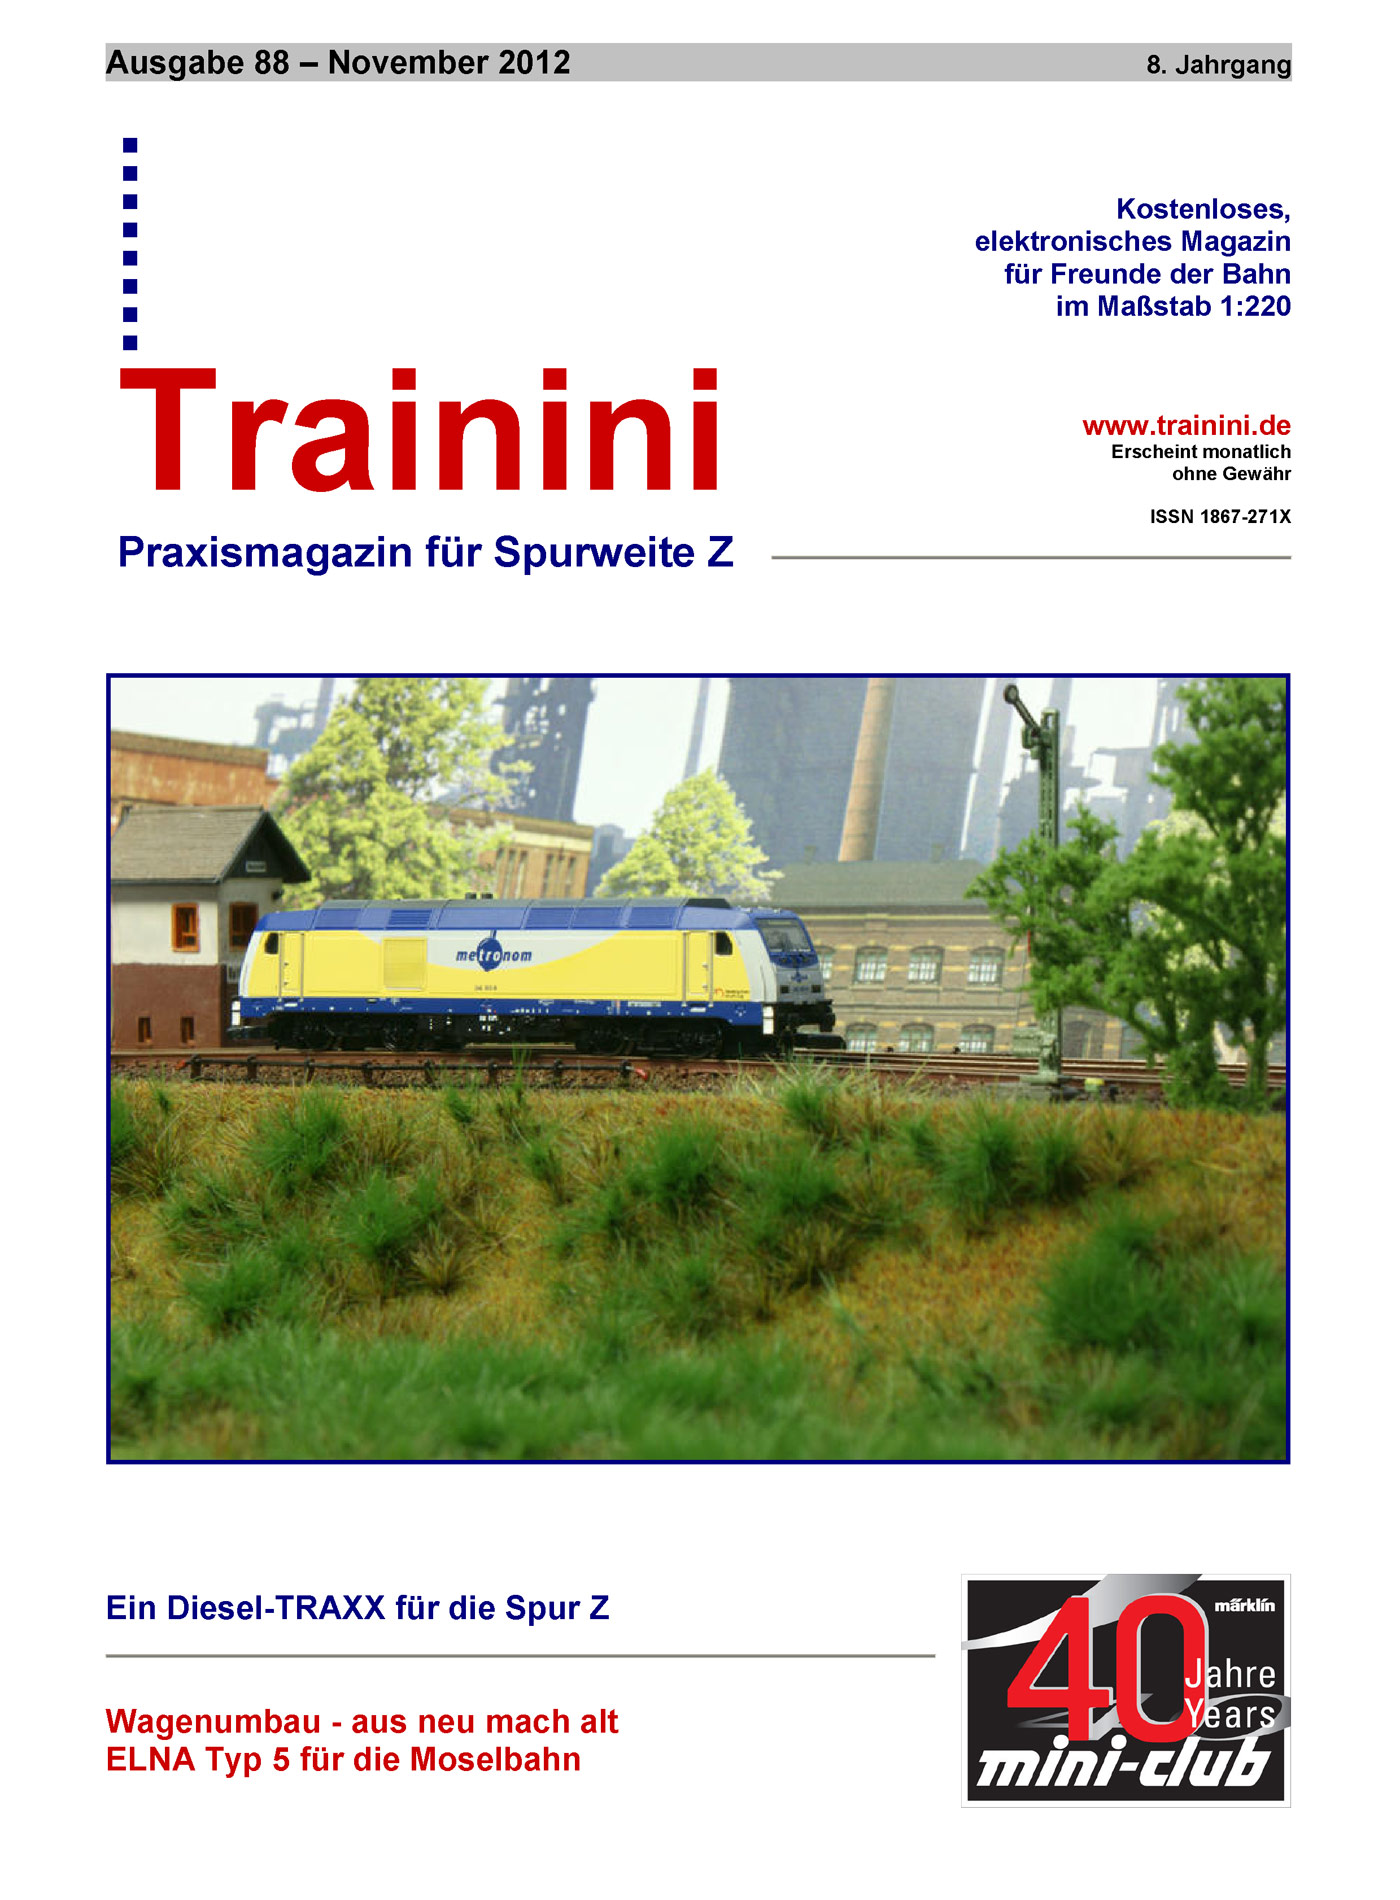 Trainini Ausgabe November 2012